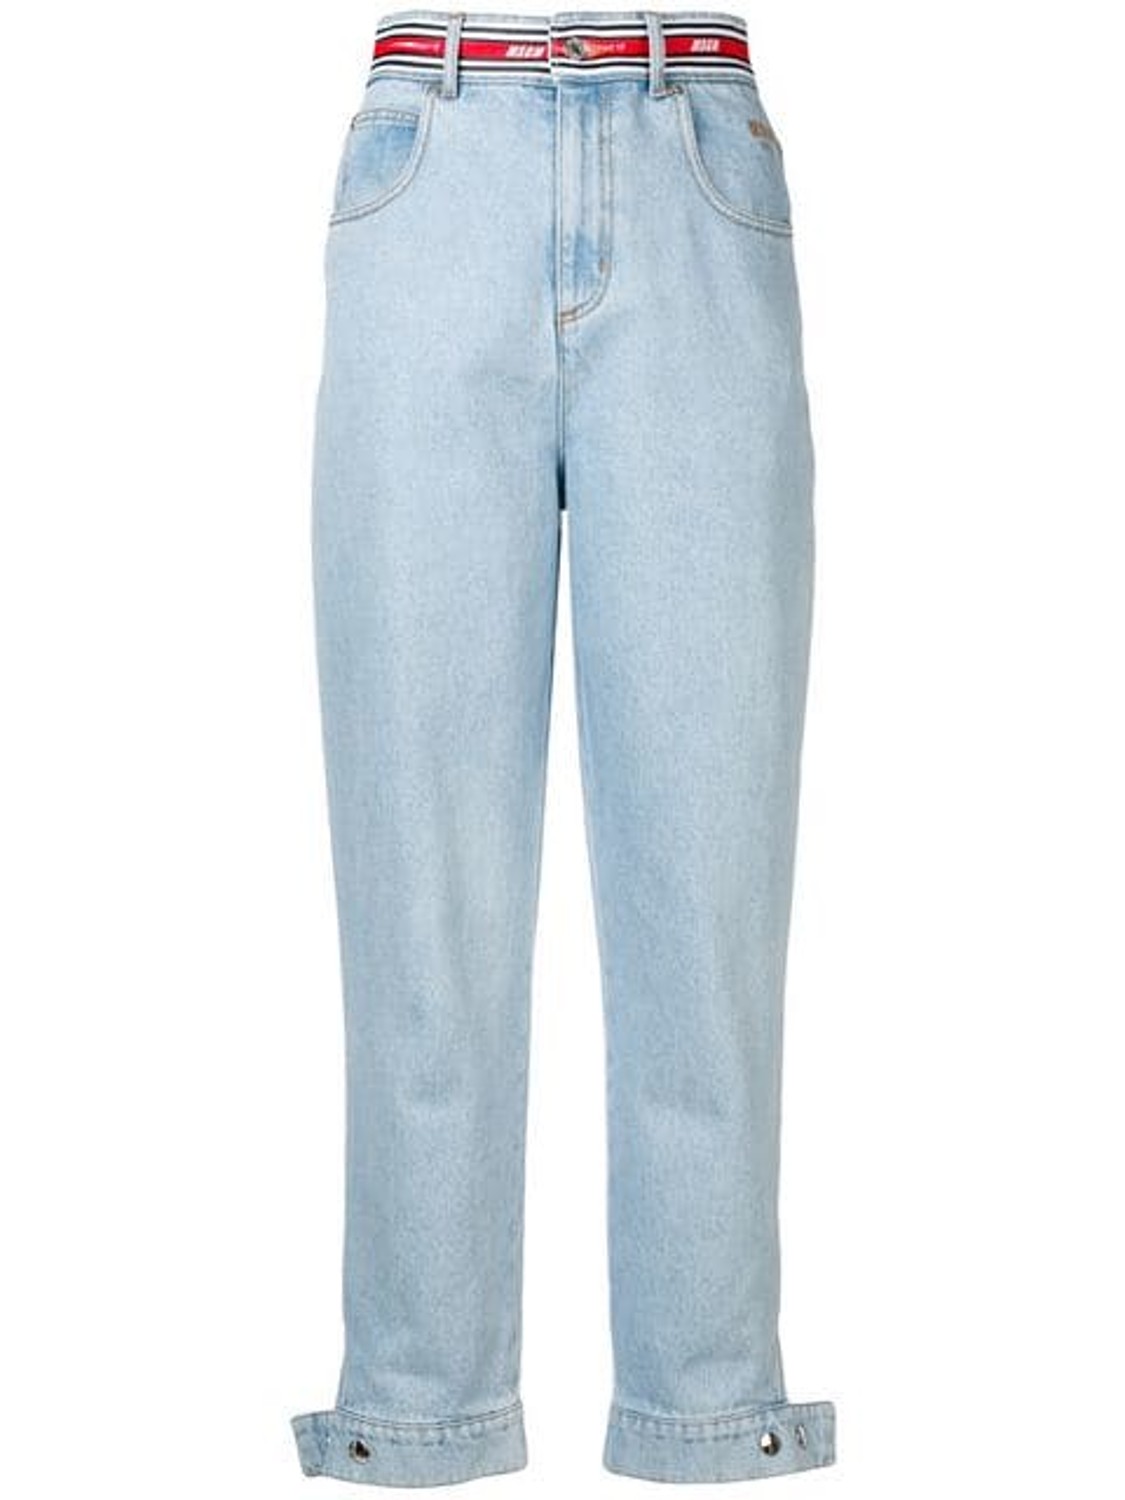 shop MSGM Sales Pantaloni: Pantalone MSGM, jeans chiaro, modello vita alta, cintura con logo a contrasto, stretti infondo con bottoni automatici, quattro tasche.

Composizione: 100% cotone. number 1422